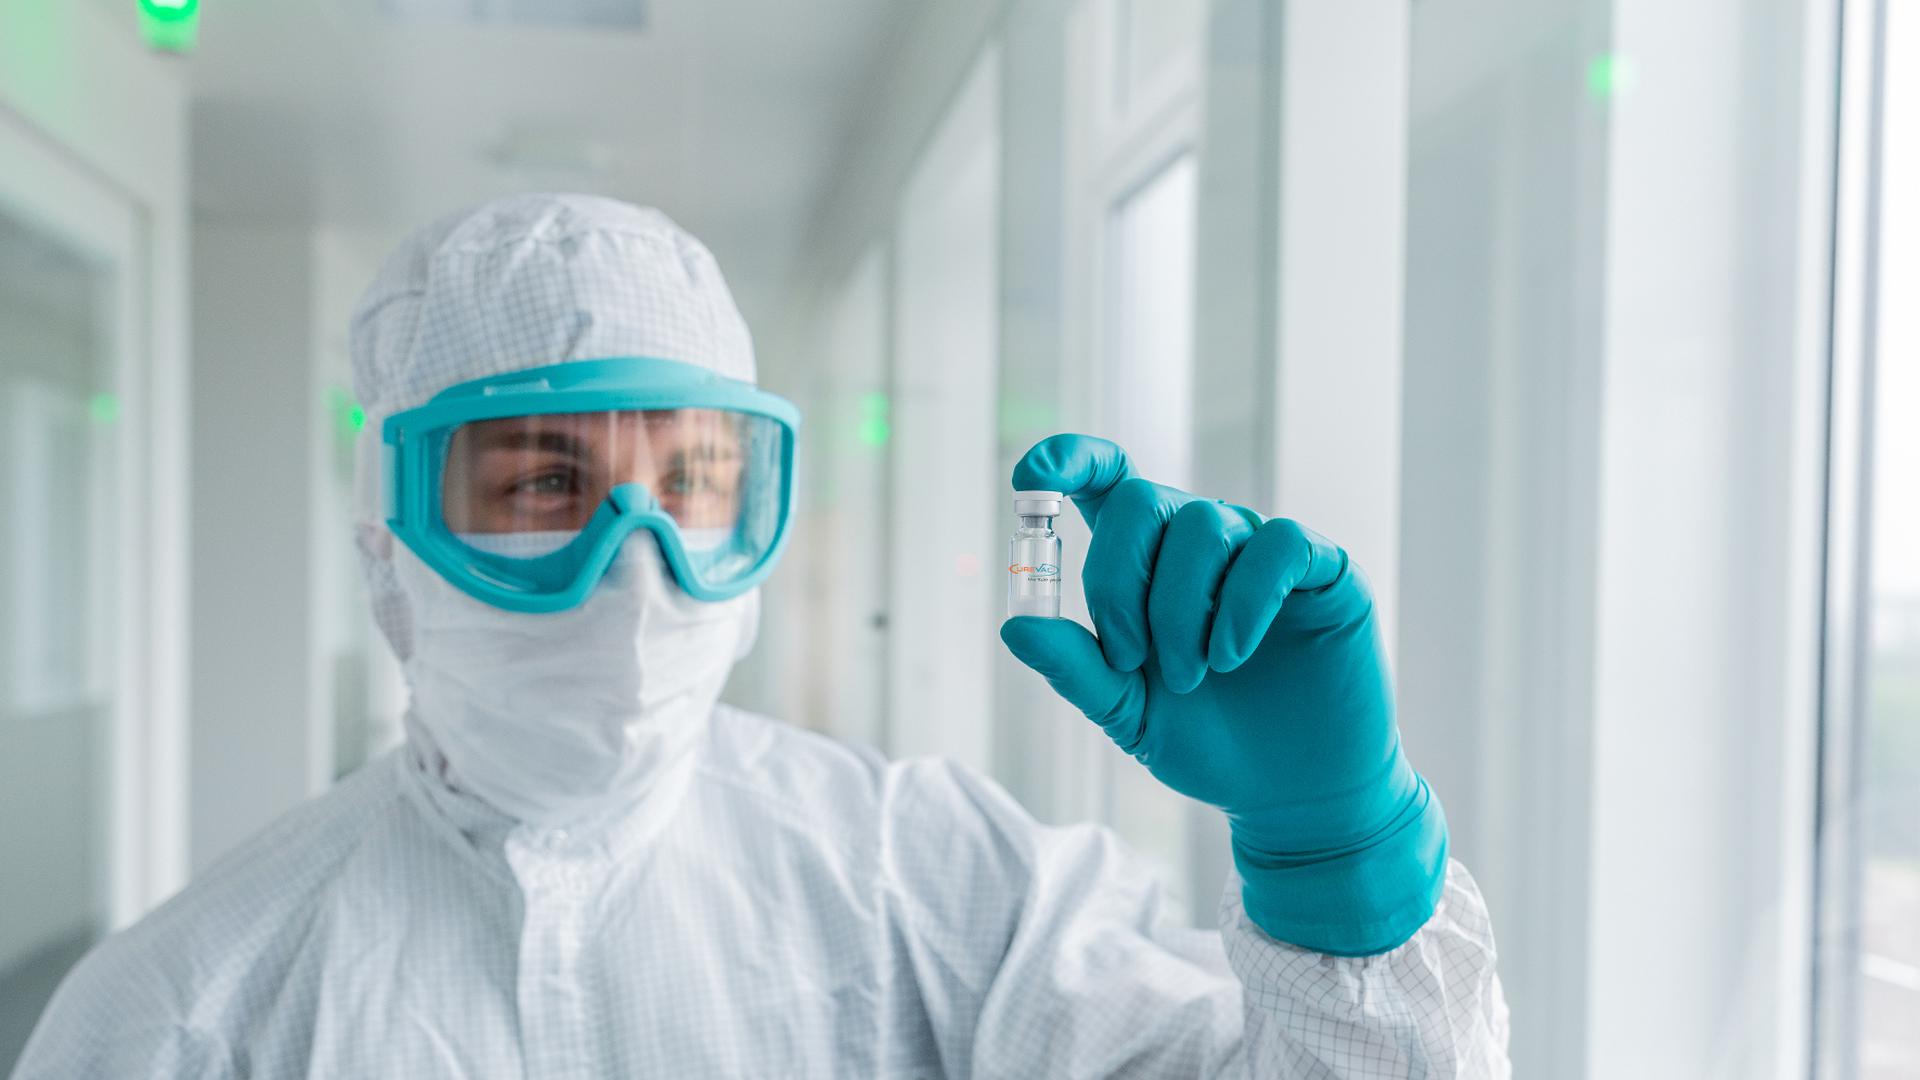 Auf der Zielgeraden: Der Tübinger Bio-Pharmahersteller Curevac nimmt gerade abschließende Tests an seinem Corona-Impfstoffkandidaten vor. Nach der Zulassung sollen bis Ende 2021 etwa 300 Millionen Dosen produziert werden.